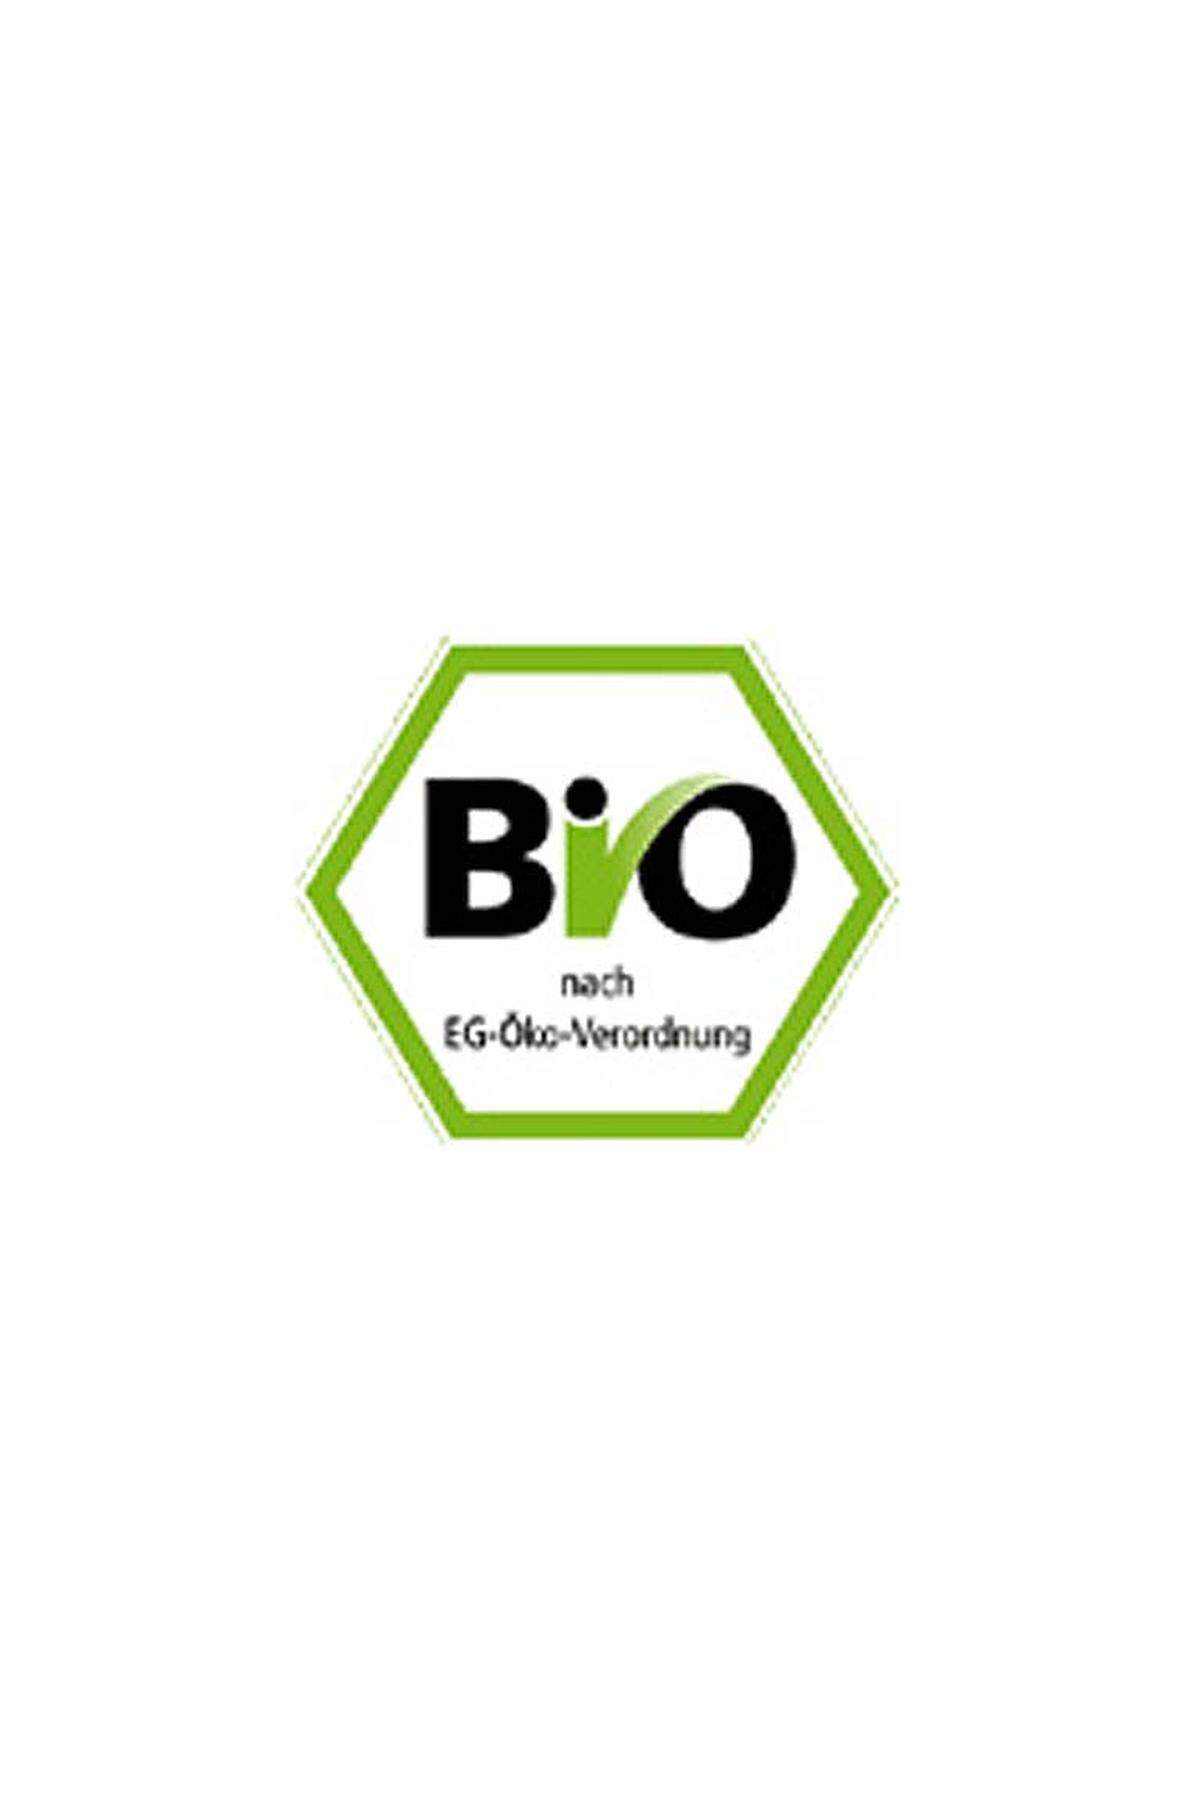 Das ist das staatliche Bio-Siegel aus Deutschland. Das Siegel kennzeichnet Produkte aus biologischer Landwirtschaft. Die Kennzeichnung beruht auf den Anforderungen der EU-Bio-Verordnungen. Die externe Kontrolle erfolgt gemäß den EU-Bio-Verordnungen mindestens einmal jährlich durch anerkannte Kontrollstellen.